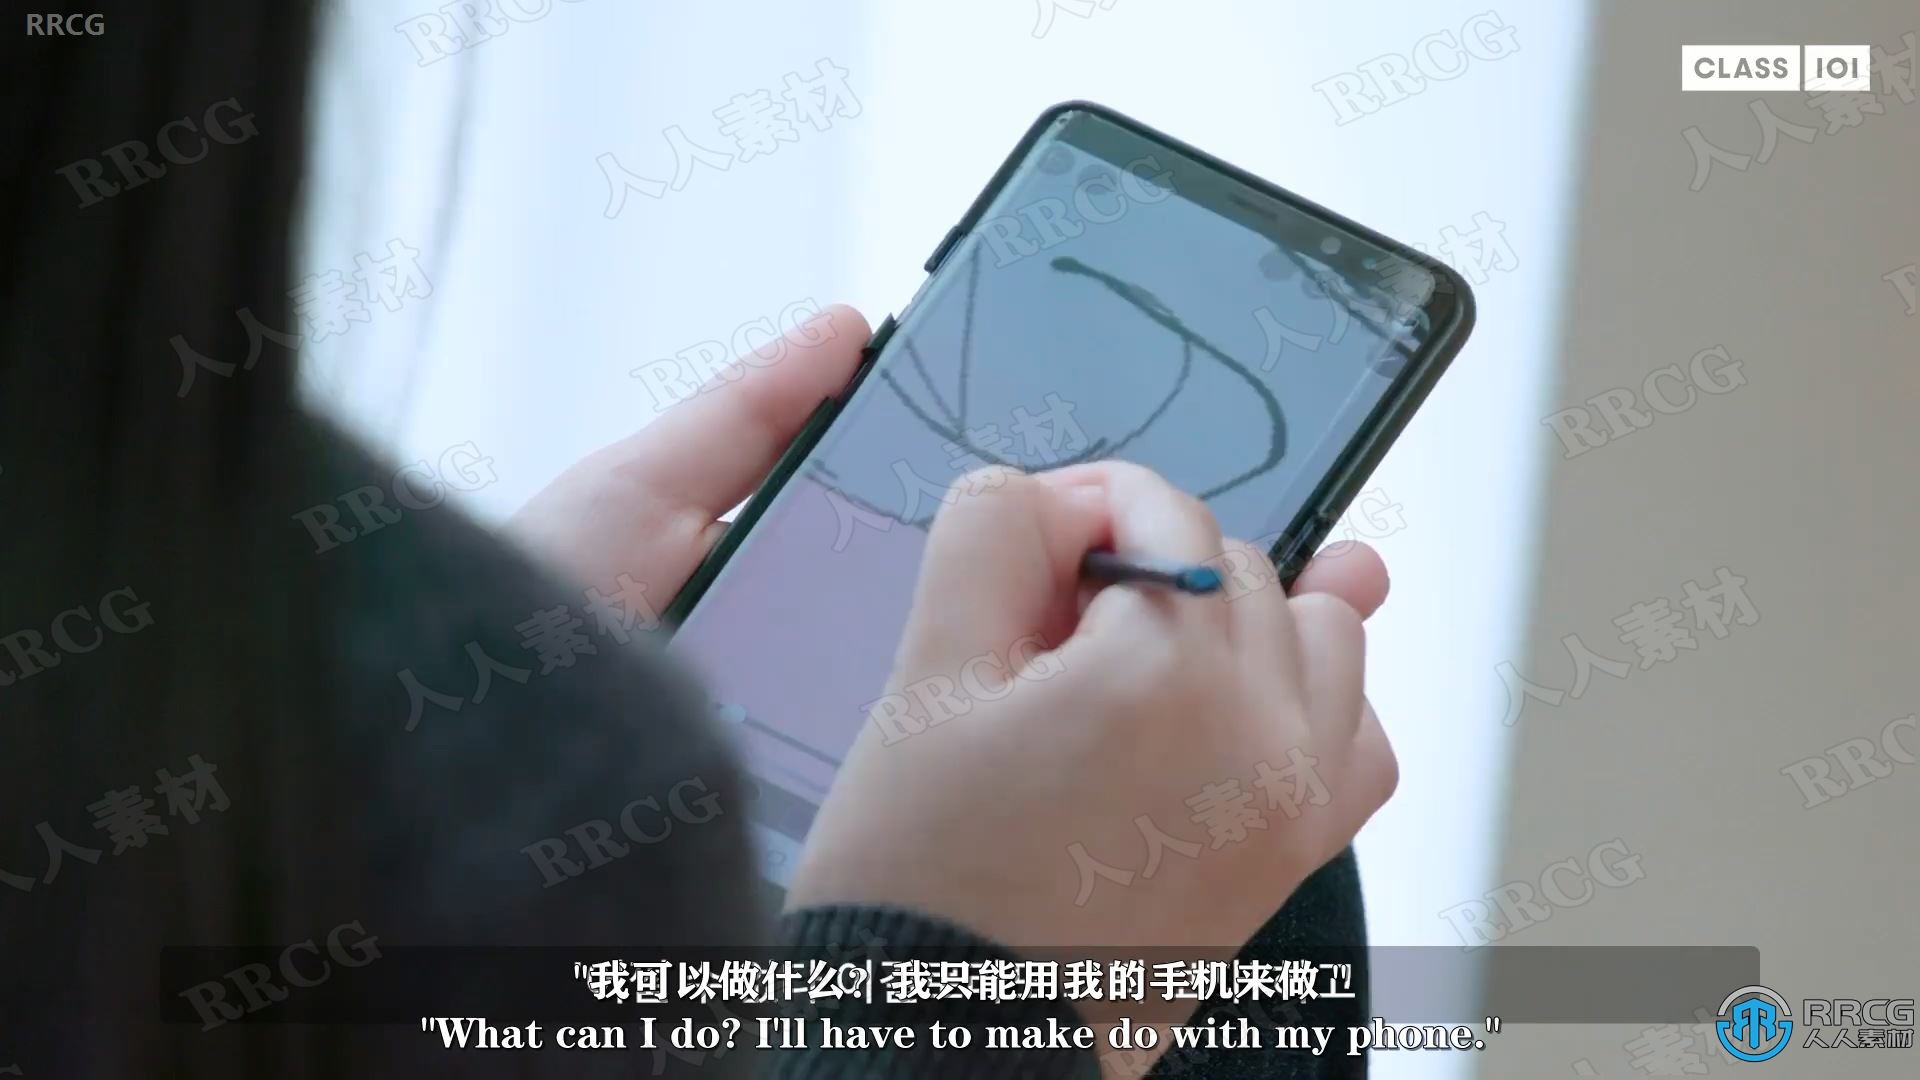 【中文字幕】如何在手机上创建动漫角色数字绘画视频教程